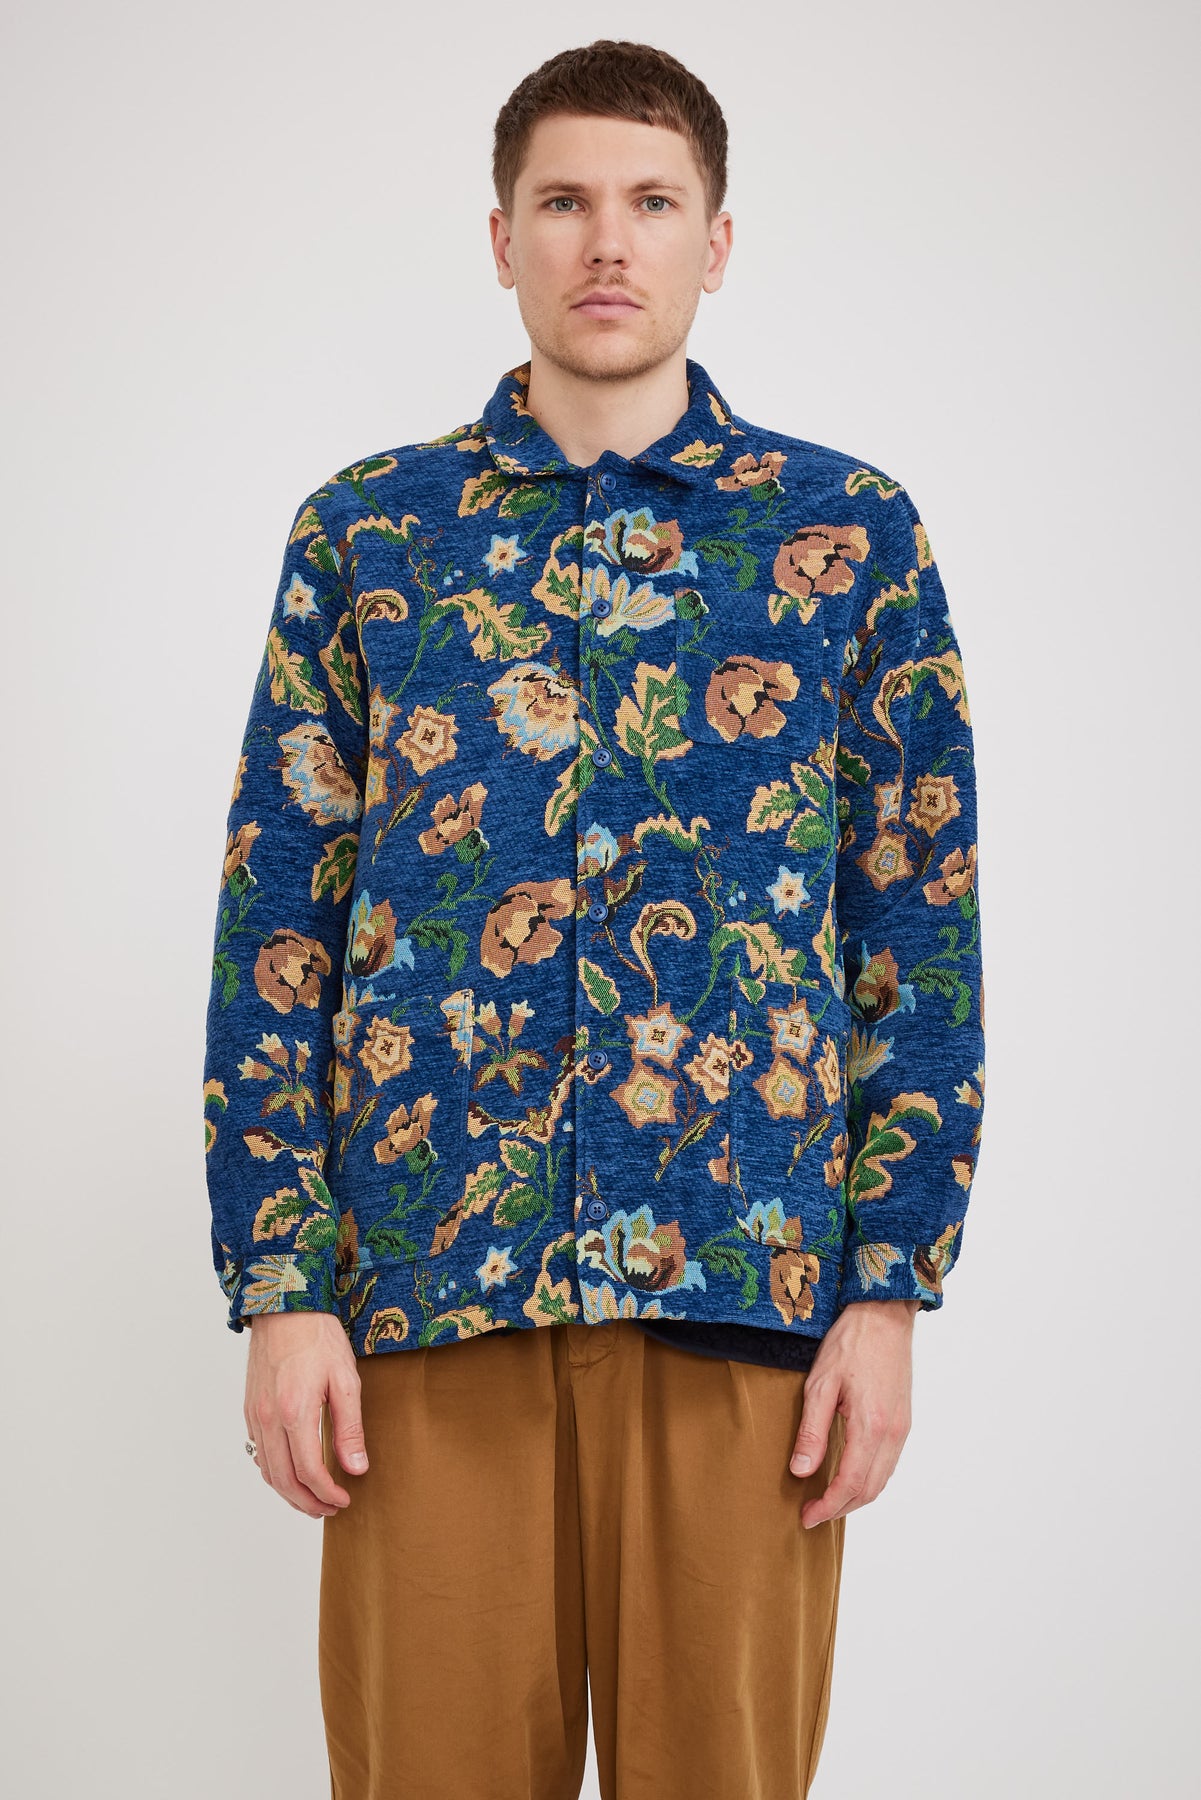 Kestin Ormiston Shirt Jacket Royal Blue Jacquard | Maplestore